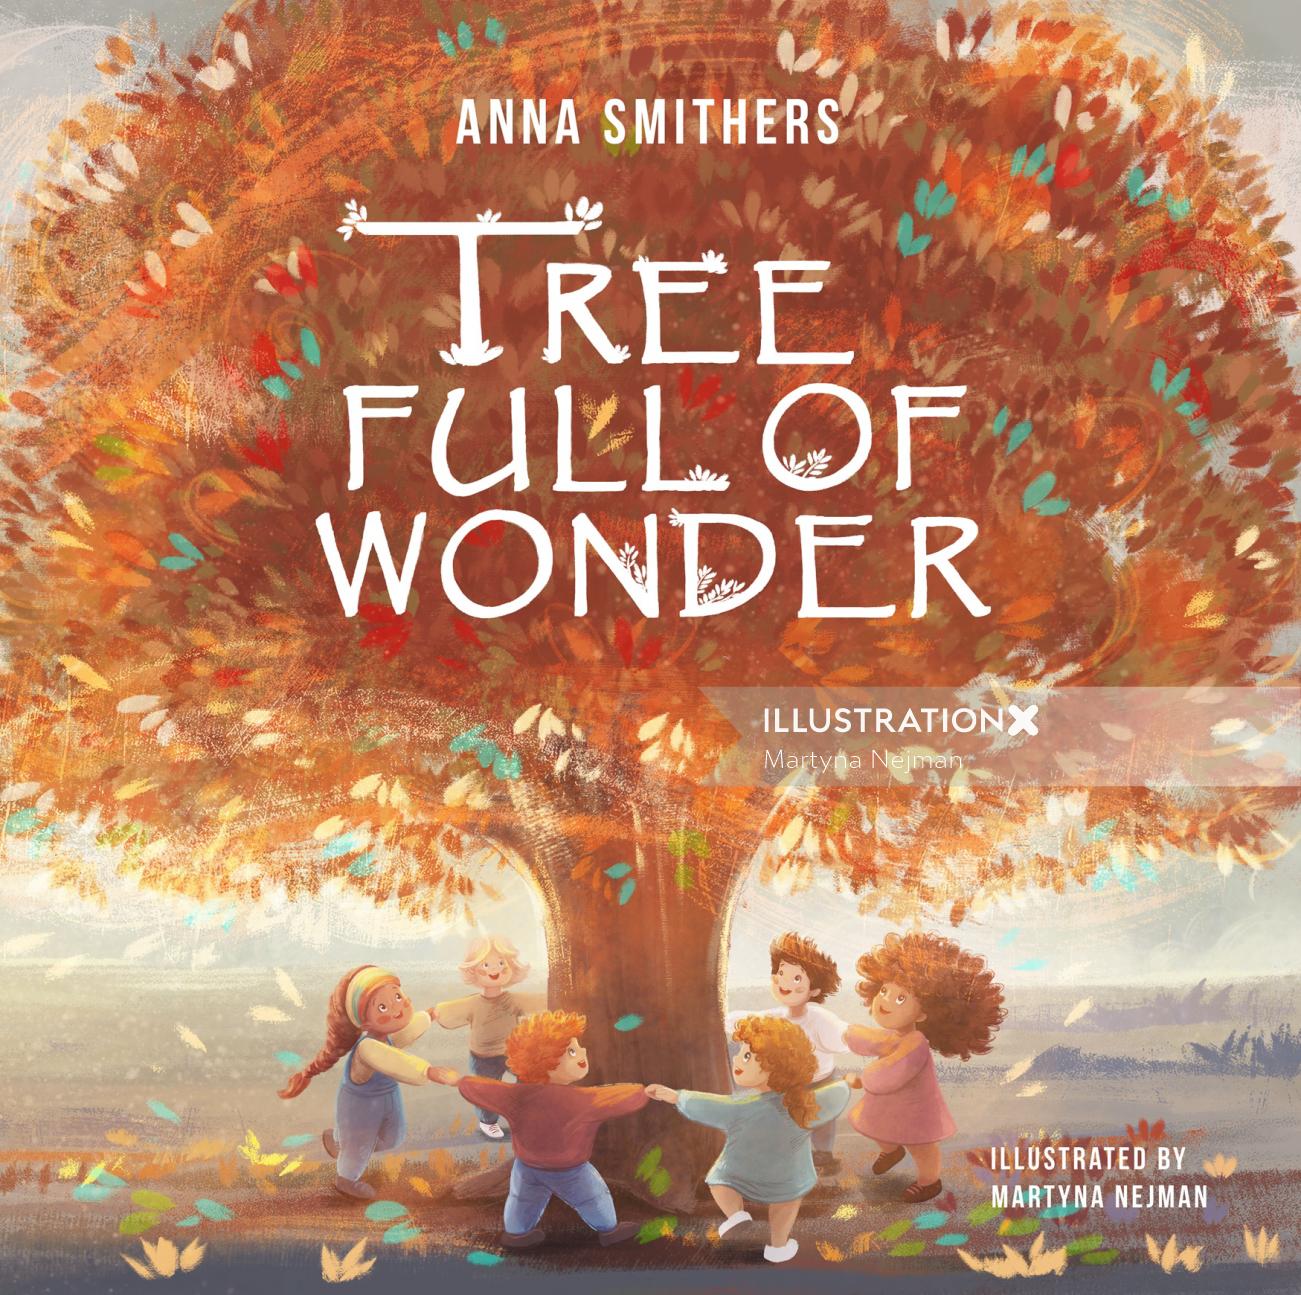 Tree full of wonder" cover